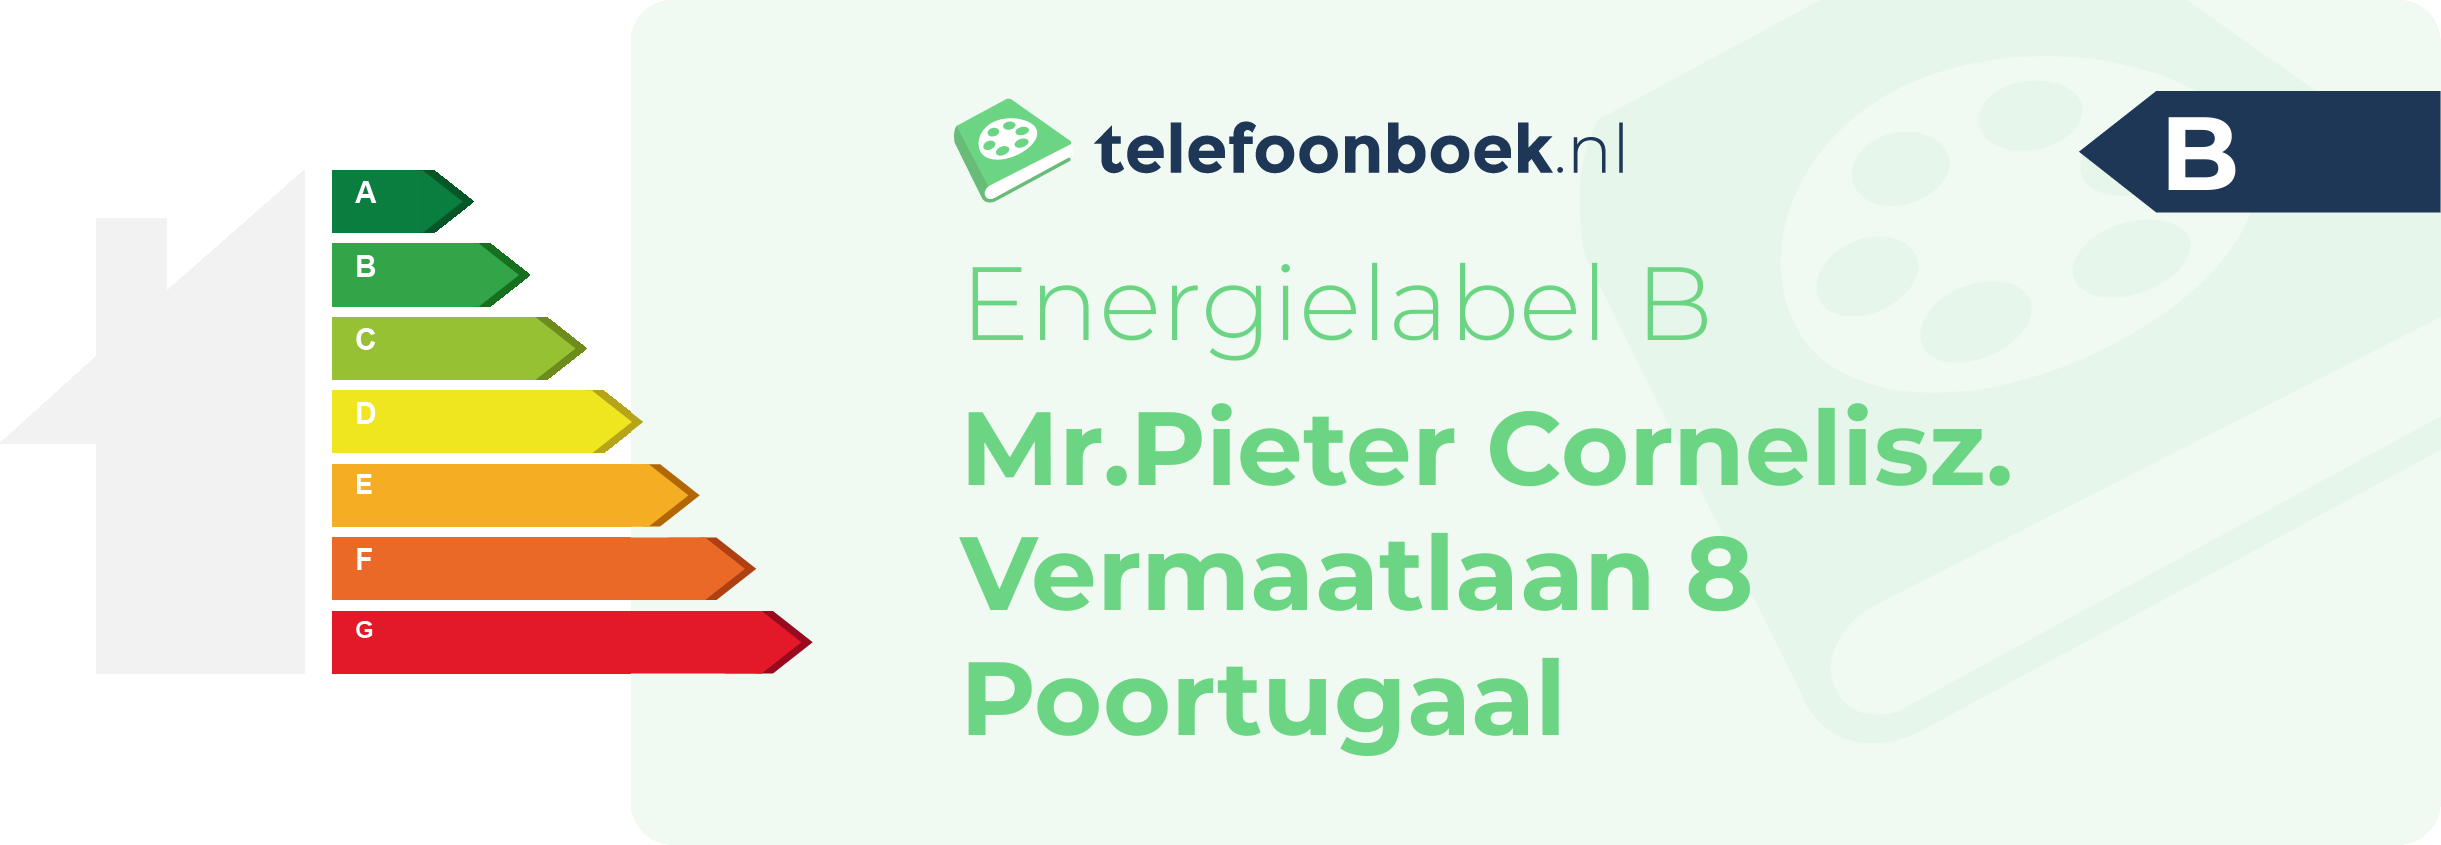 Energielabel Mr.Pieter Cornelisz. Vermaatlaan 8 Poortugaal